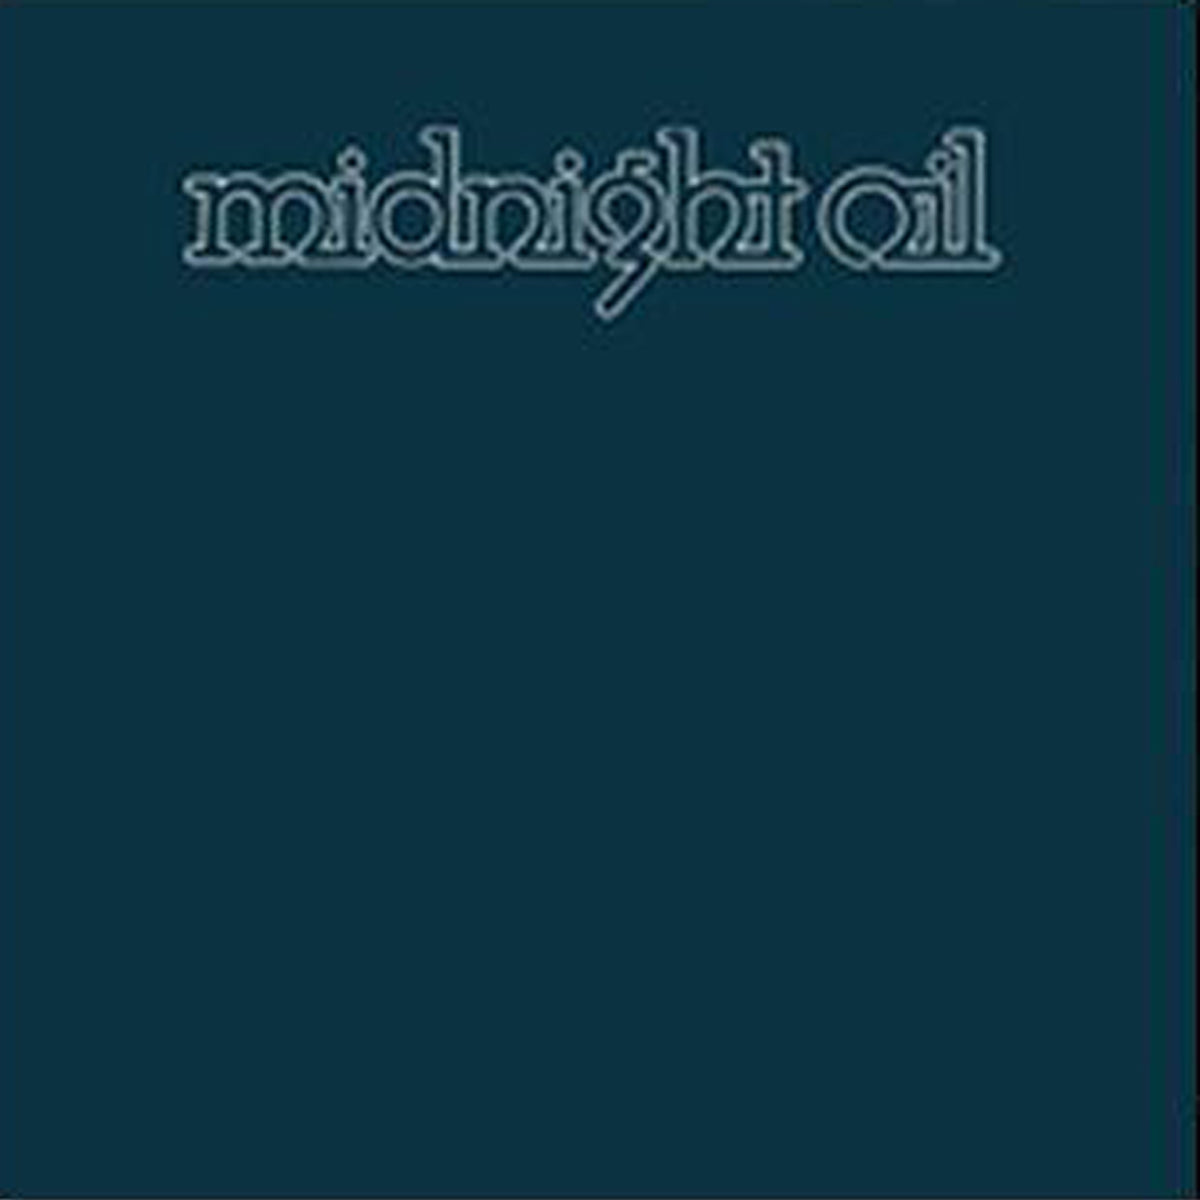 Midnight Oil (Vinyl)